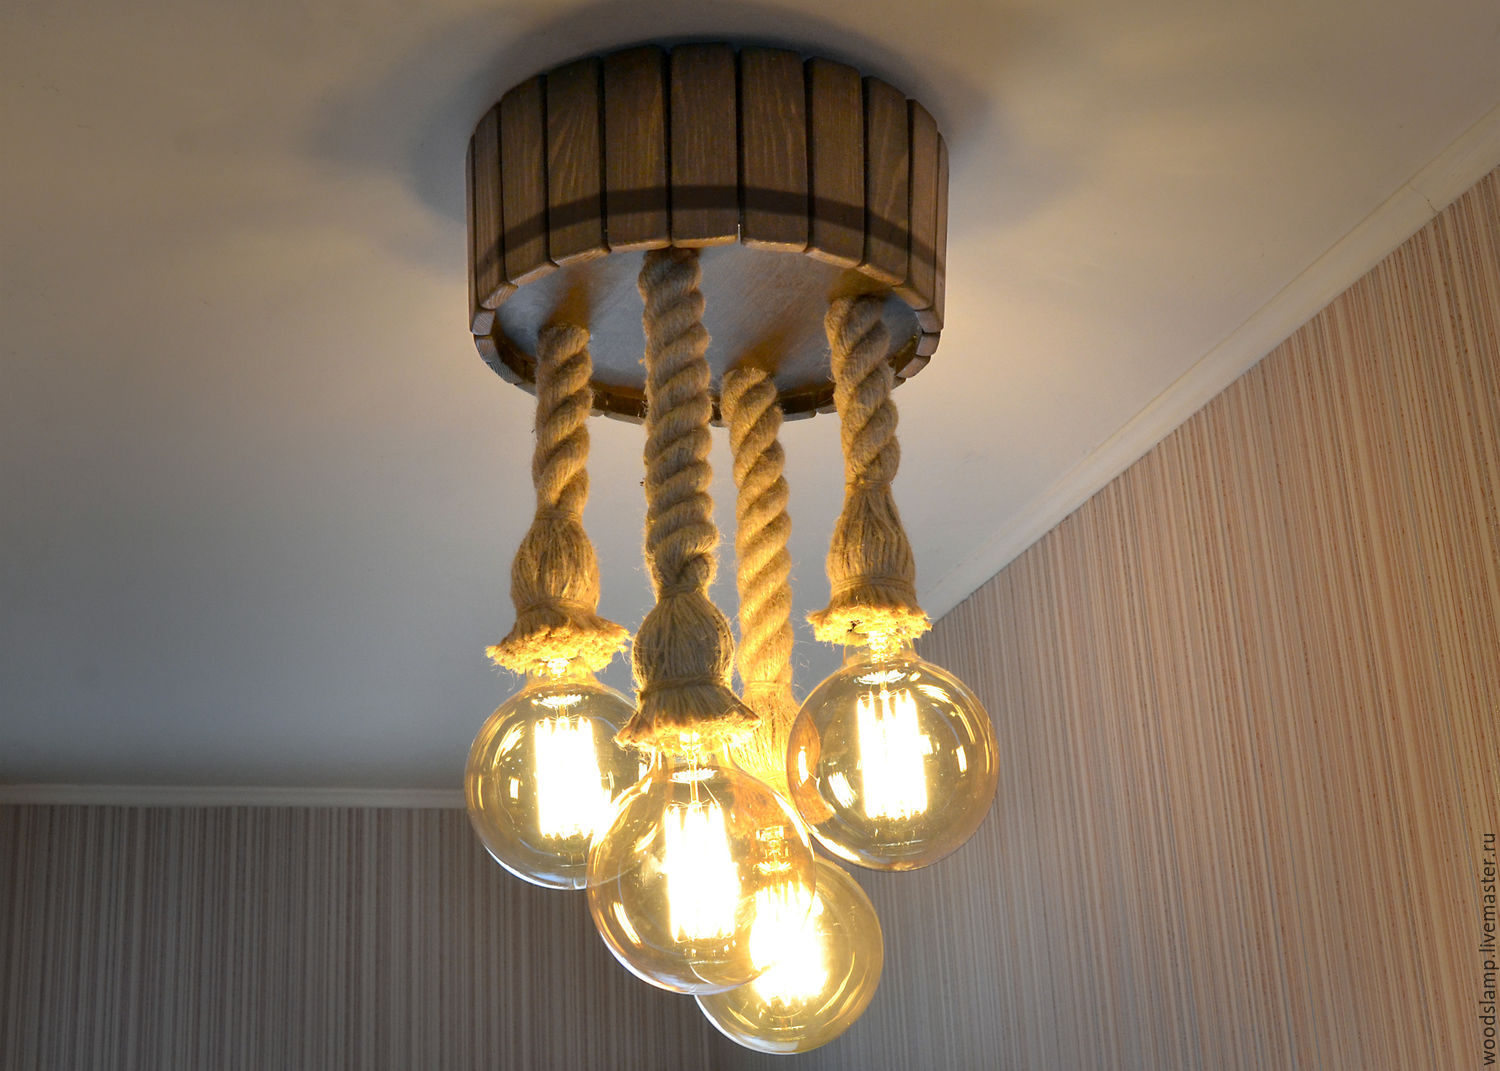 Деревянная люстра в виде бочки с джутовыми канатами и лампами Эдисона